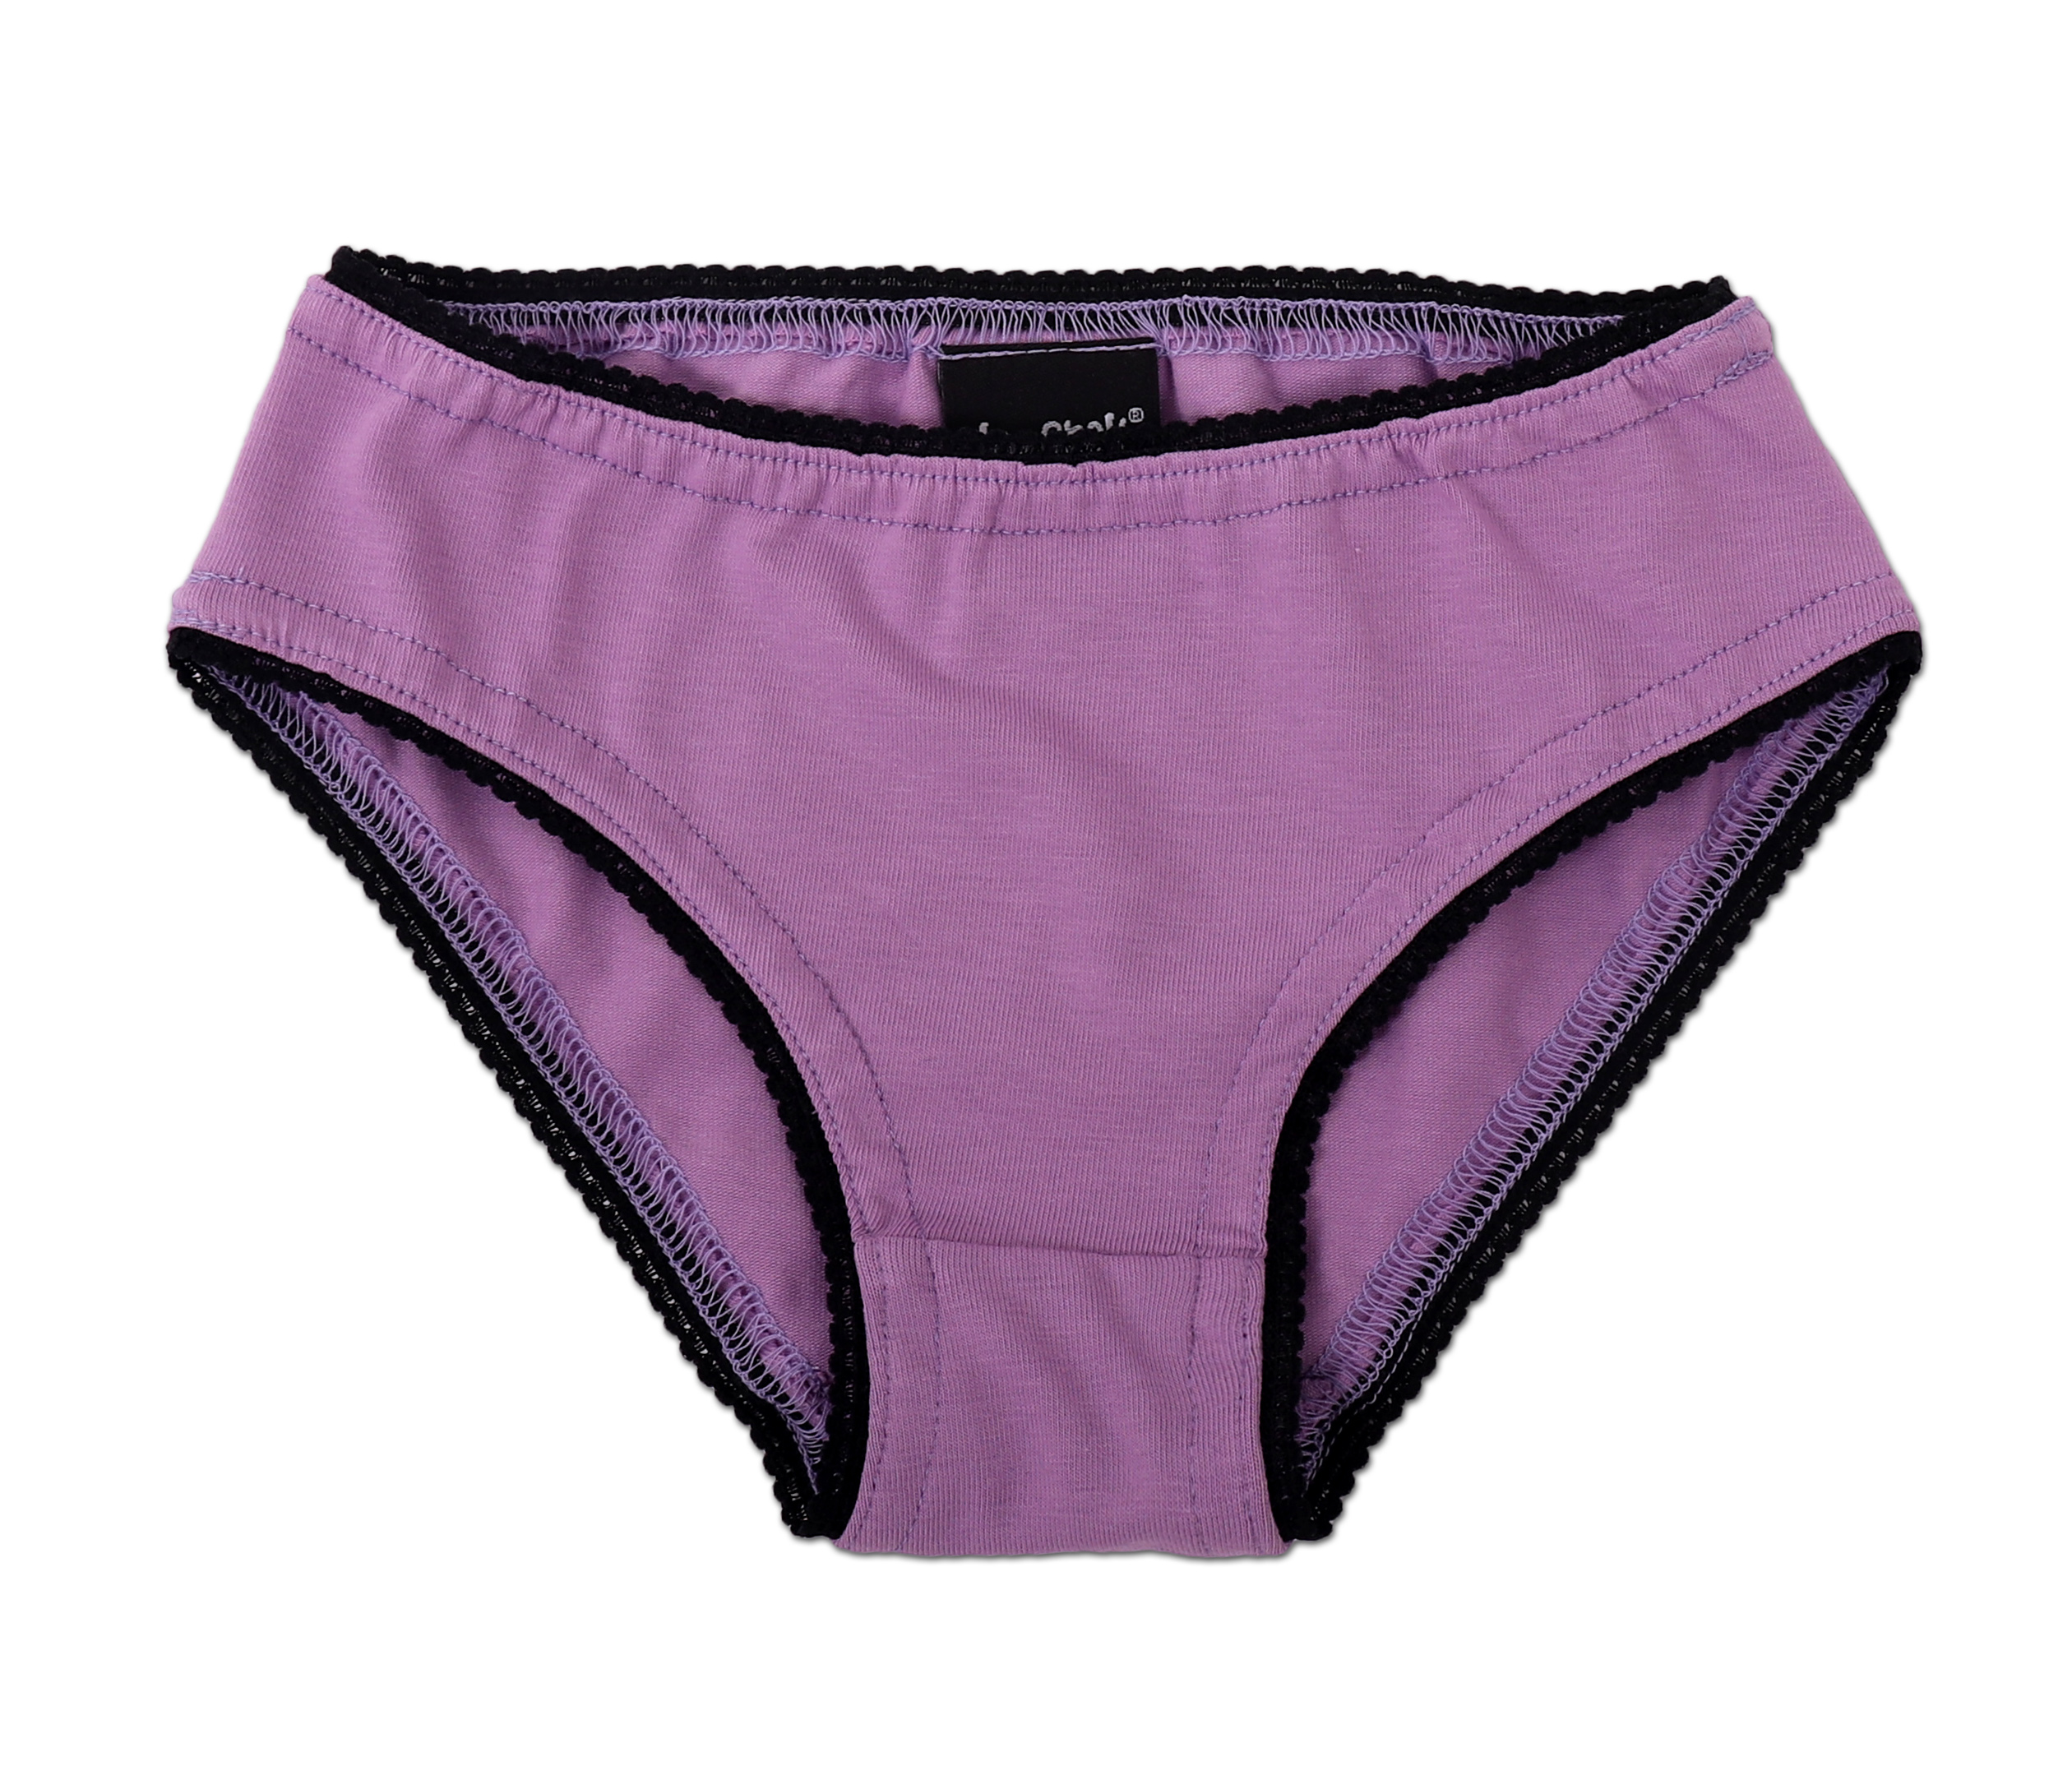 Girl's cotton panties, purple